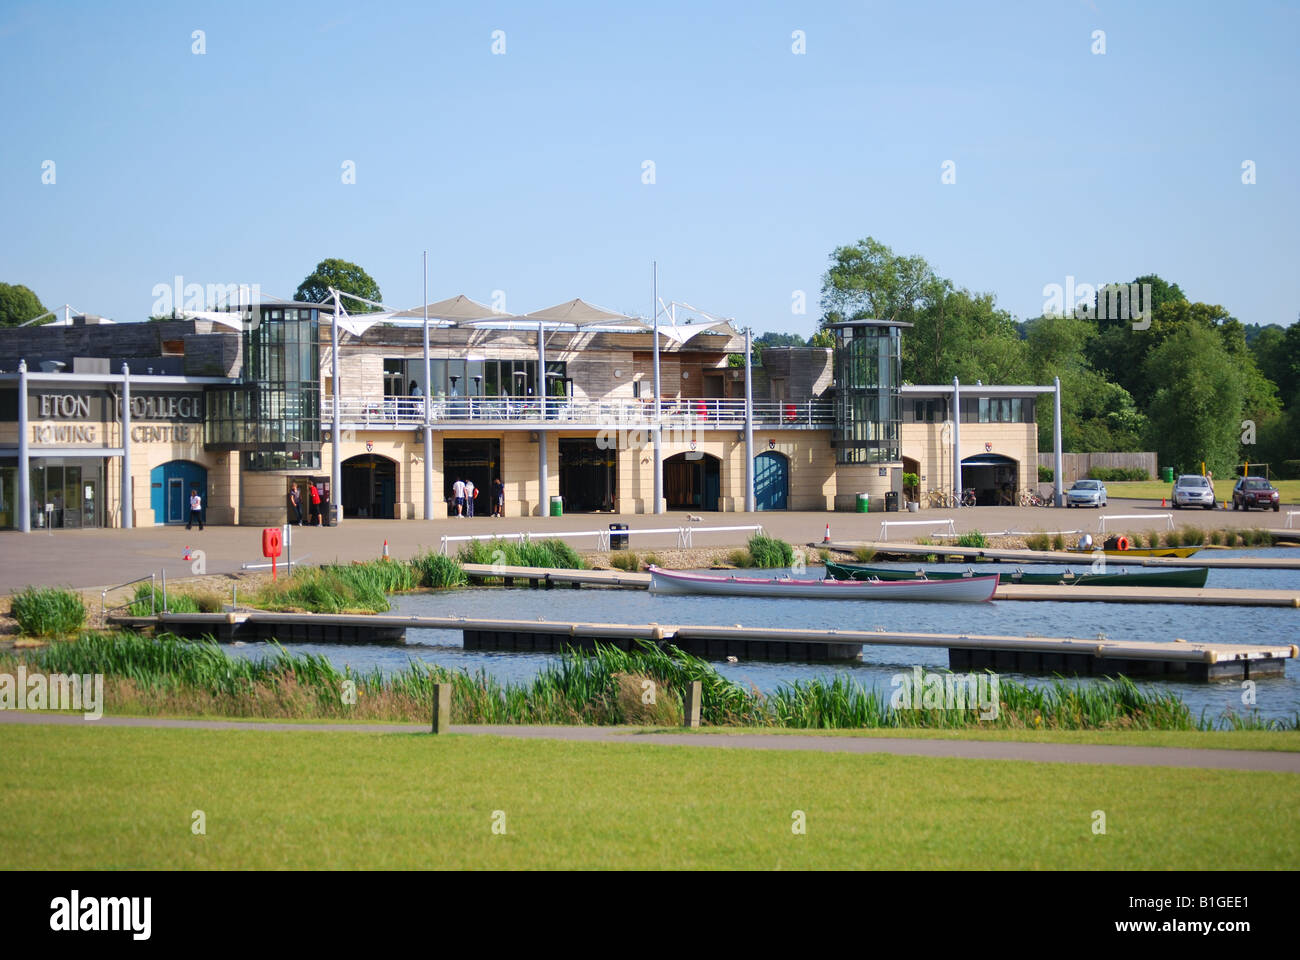 Eton College Rowing Centre, Dorney Lake, Dorney, Buckinghamshire, England, United Kingdom Stock Photo